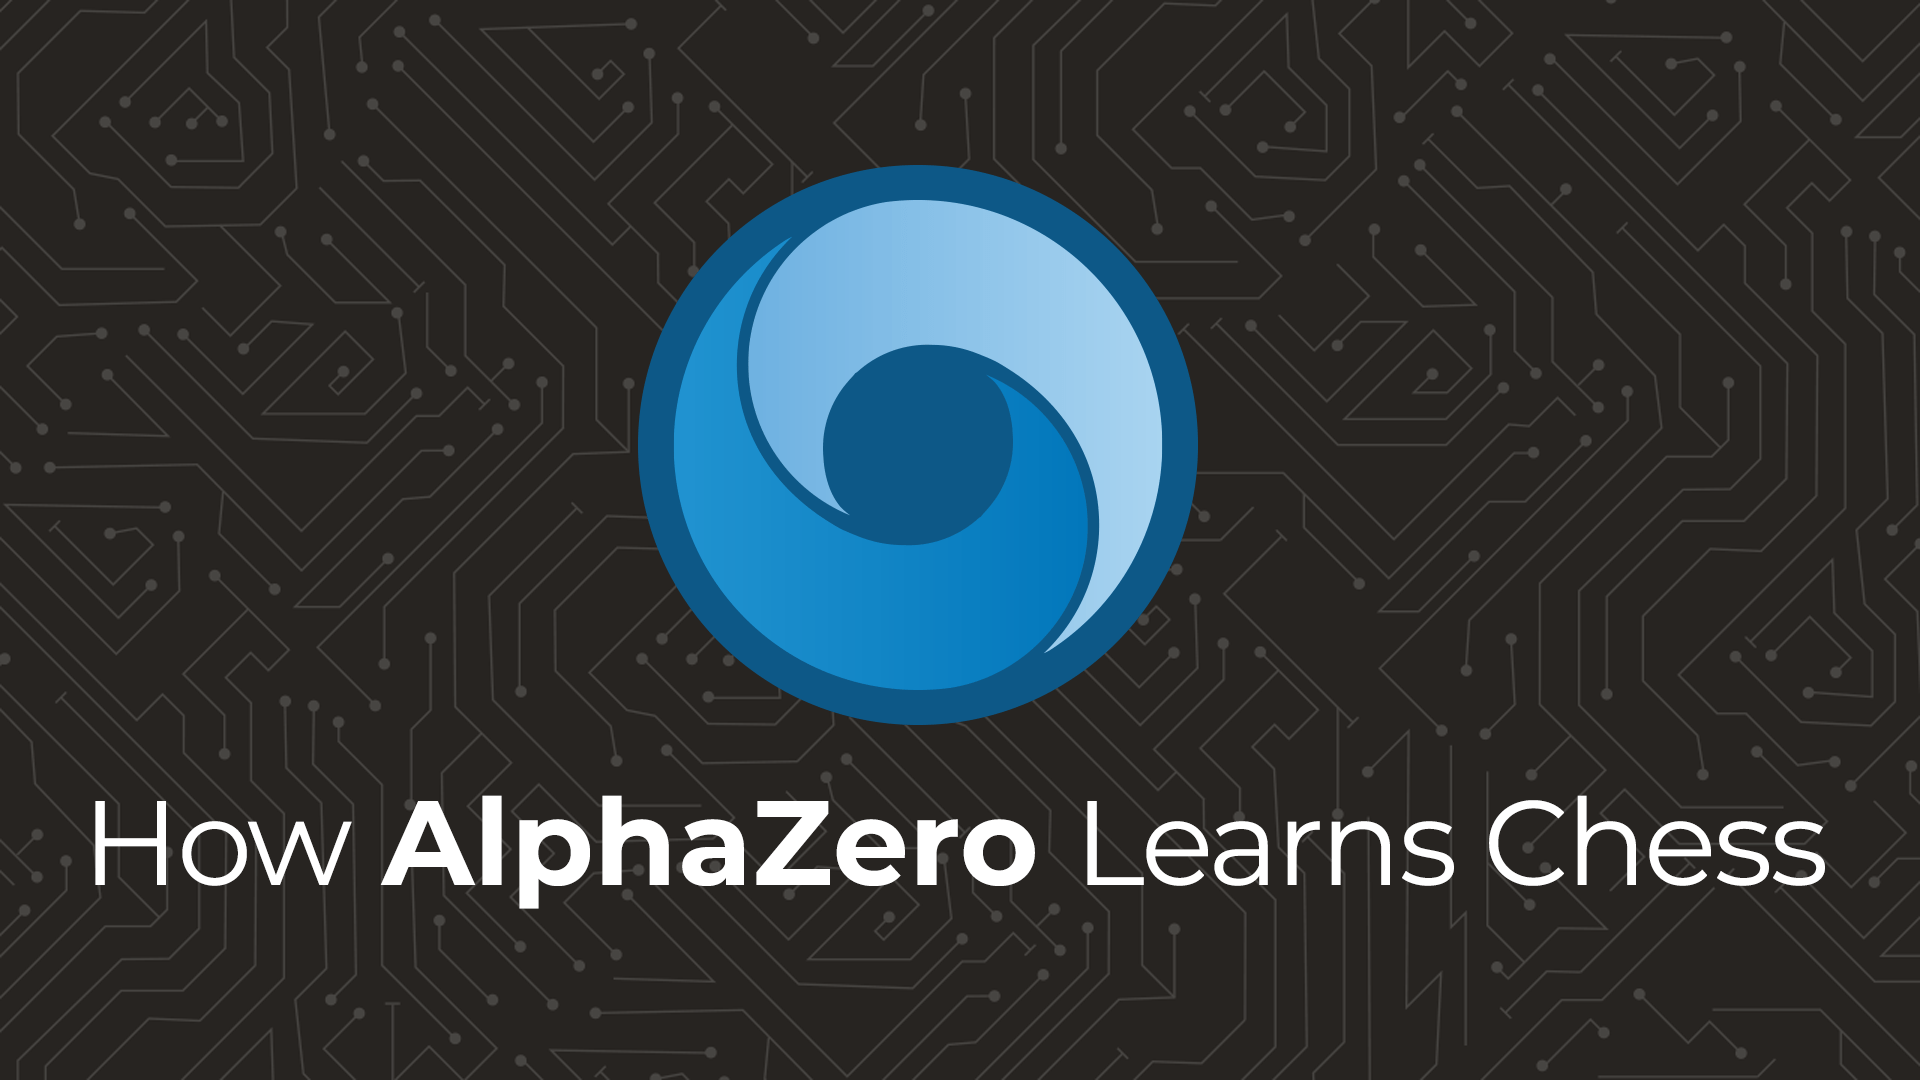 Acquisition of Chess Knowledge in AlphaZero